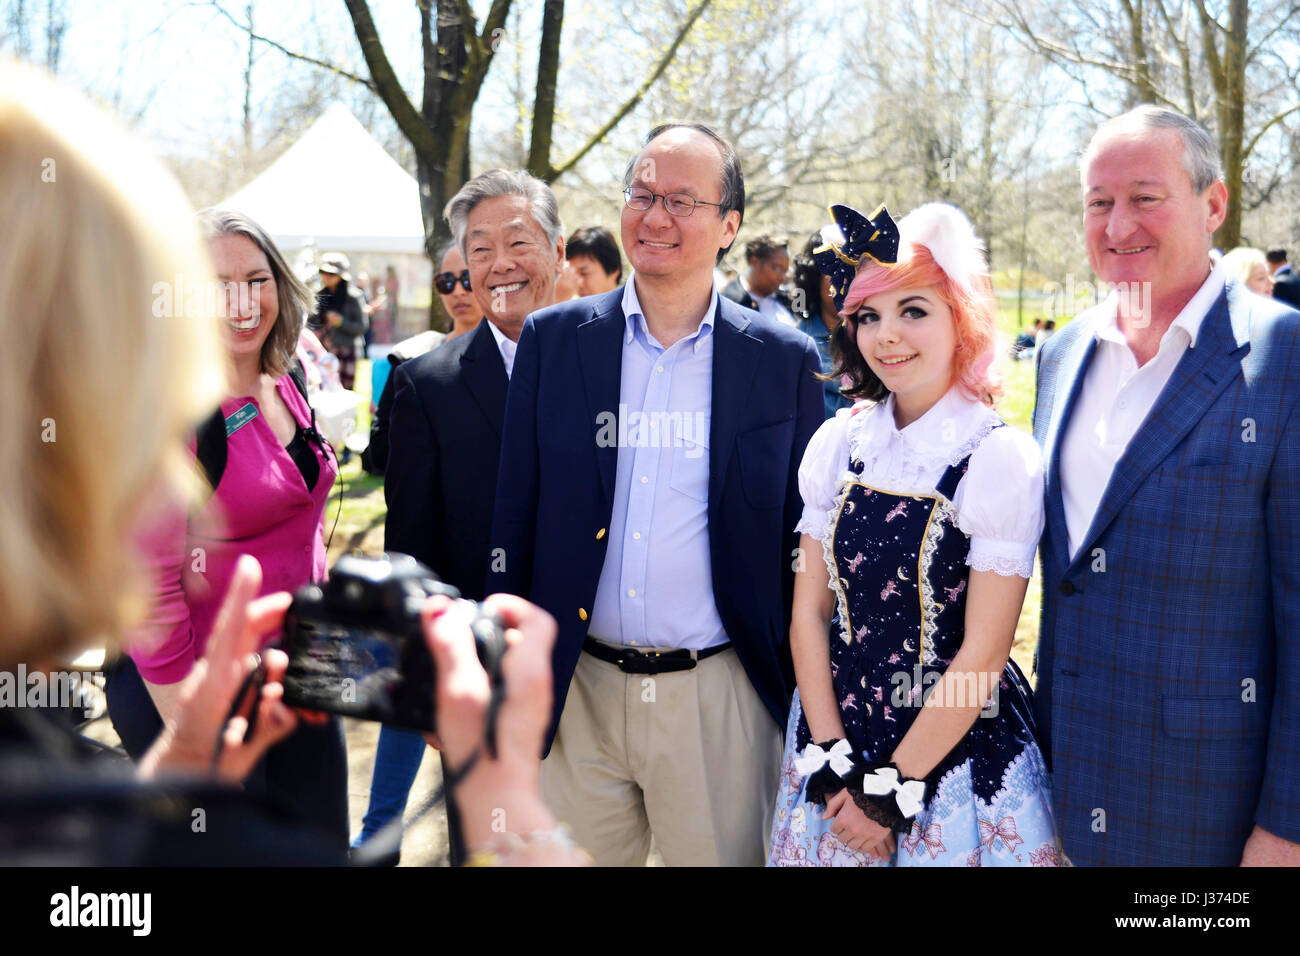 Le maire de Philadelphie Jim Kenney et une délégation de dignitaires japonais notamment Consul général du Japon à New York posent pour des photos au cours d'une visite de Banque D'Images